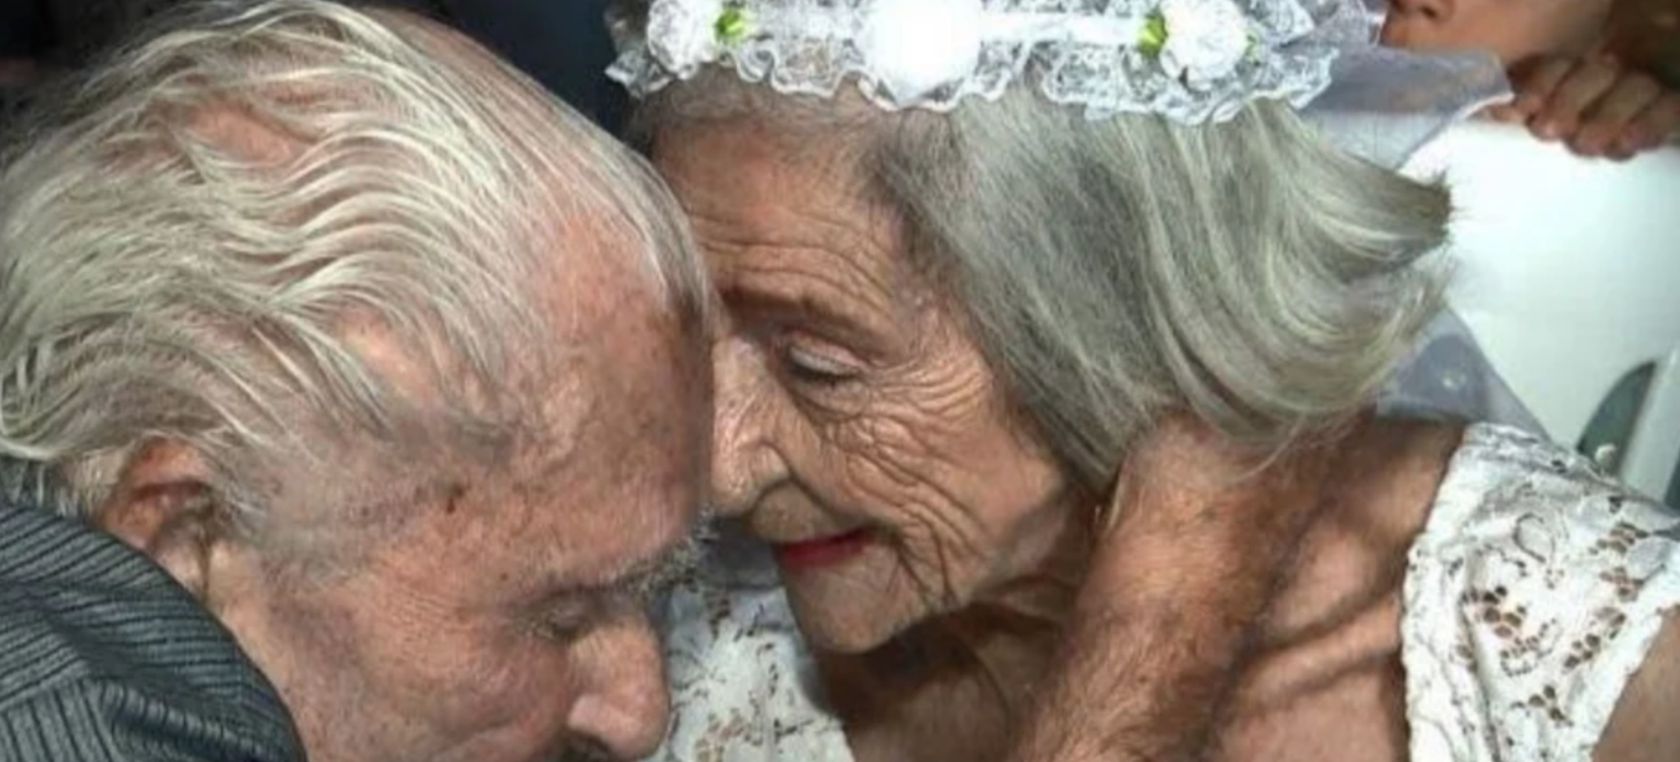 Viejitos se casan: Viejitos de más de 90 años se hacen novios y se casan |  Actualidad | LOS40 México